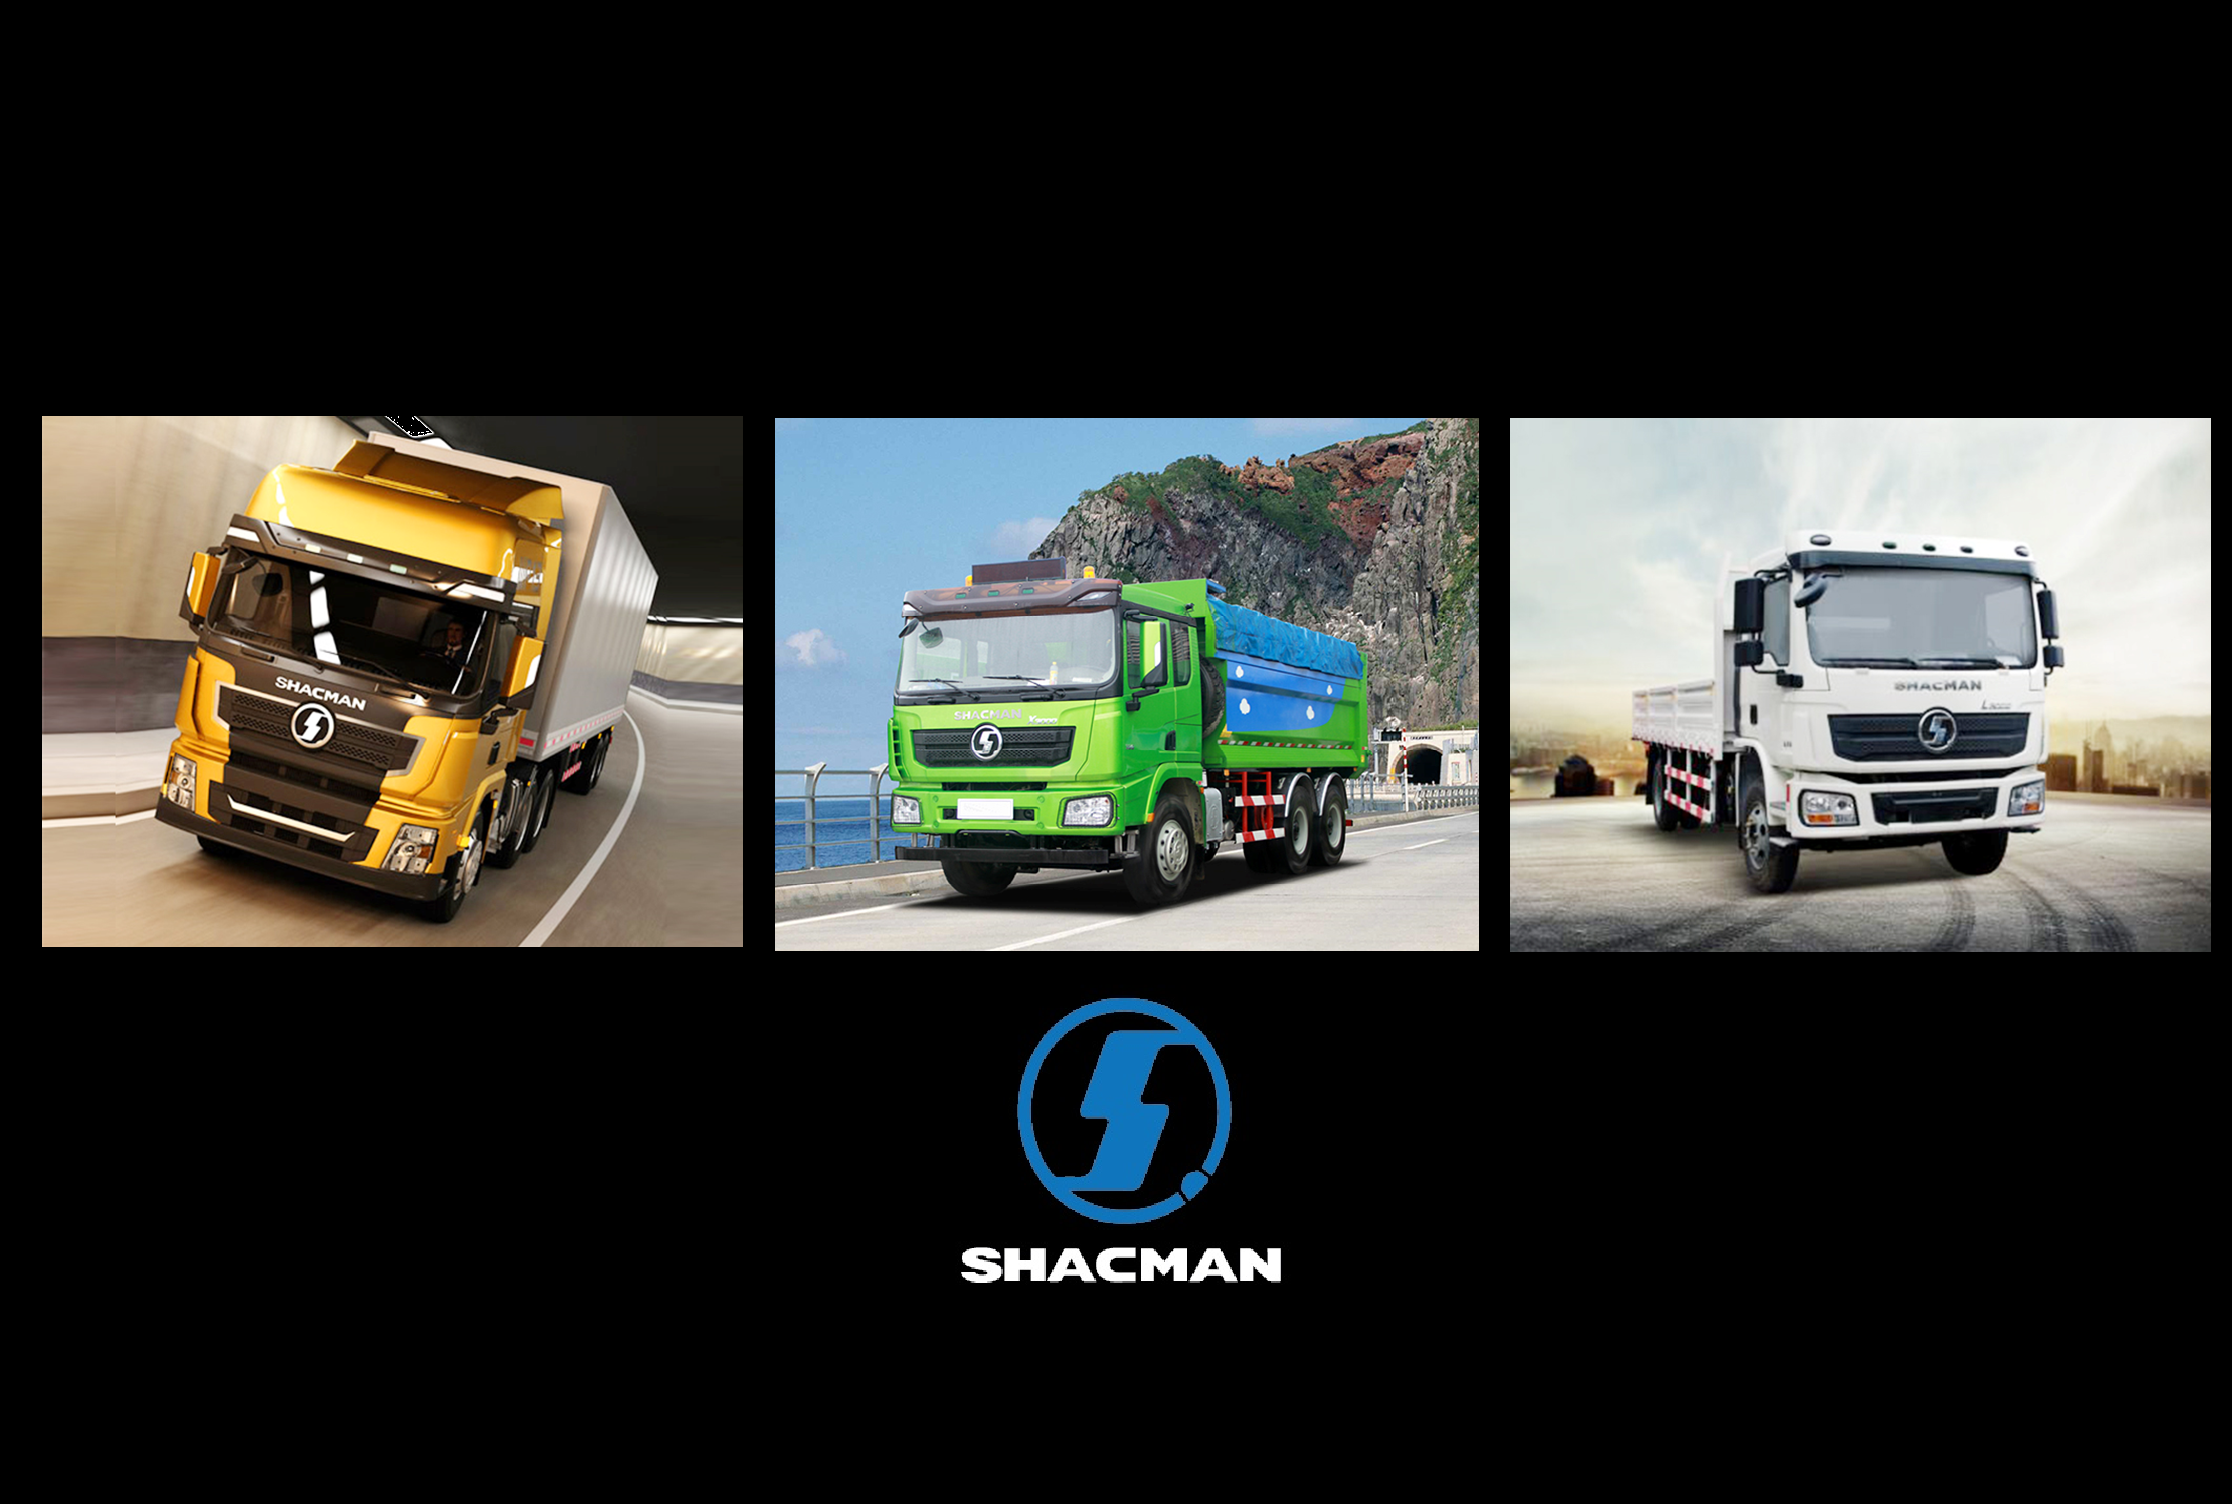 Groupe Premium complète son offre et devient aussi distributeur officiel des camions Shacman pour le Maroc, Sénégal, Côte-d’Ivoire, Togo, Bénin